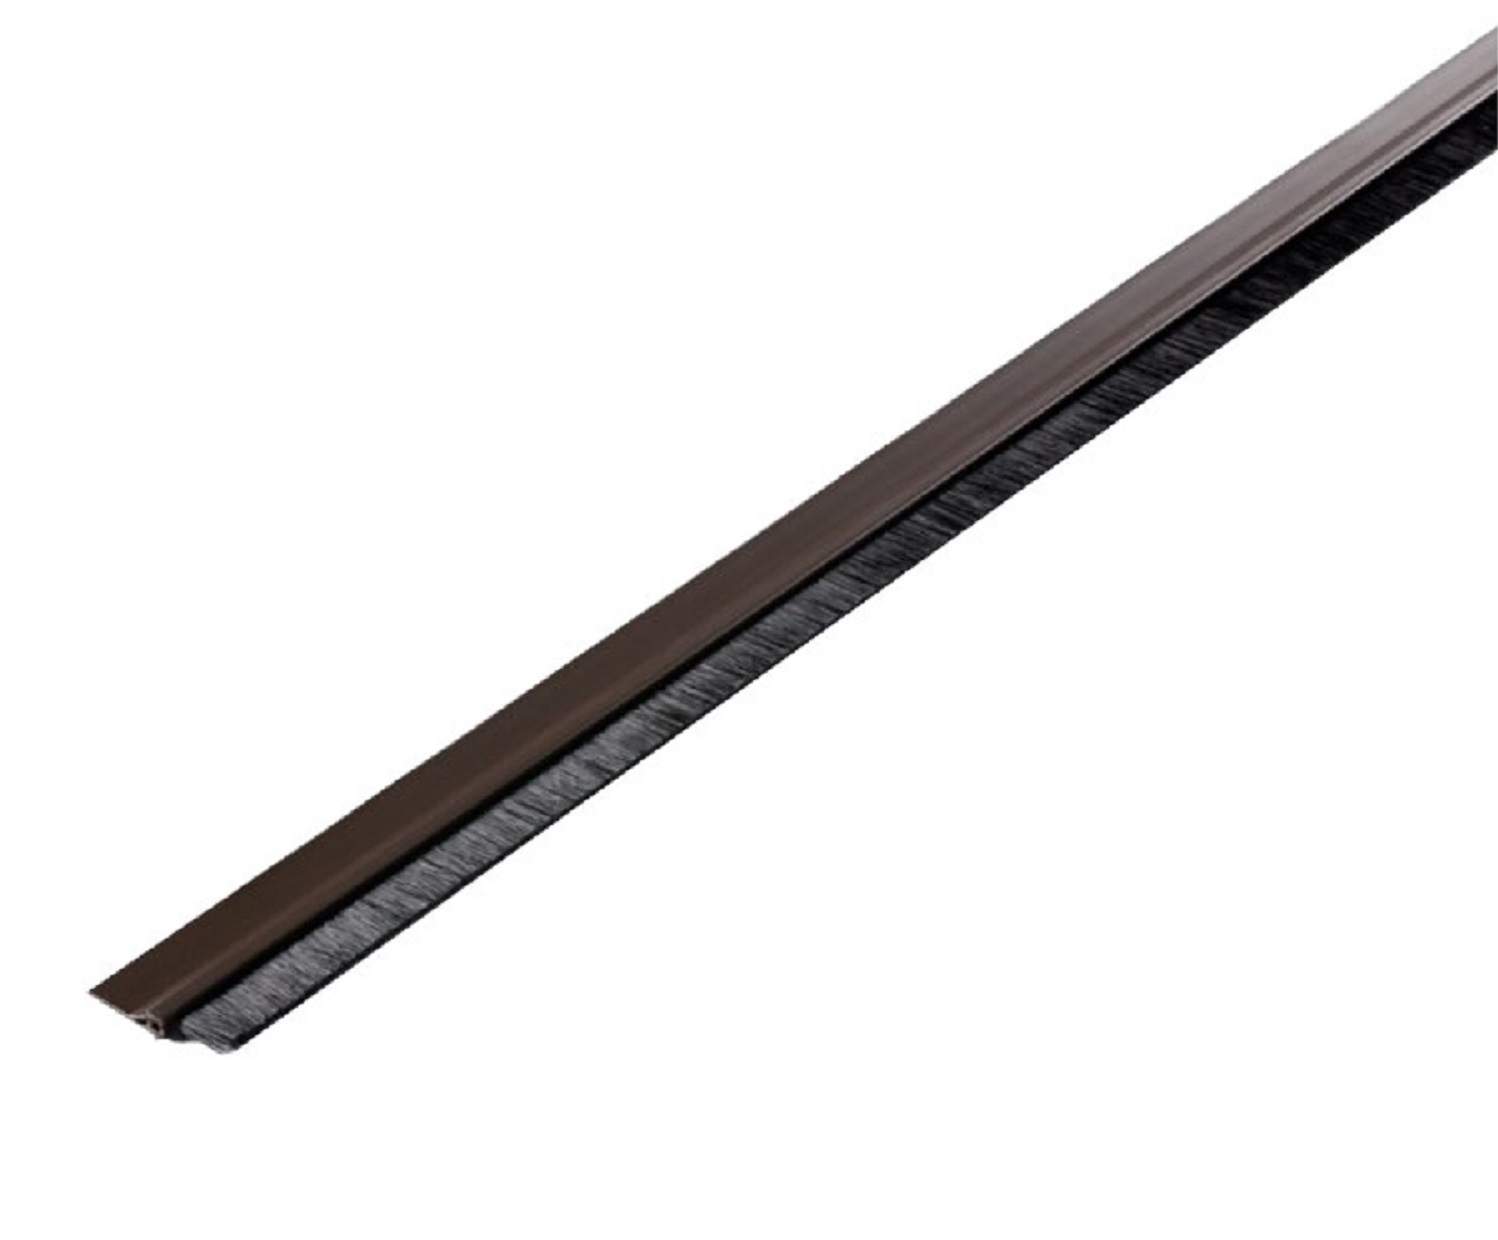 Davanzale marrone adesivo in PVC rigido con spazzola morbida, 100 cm